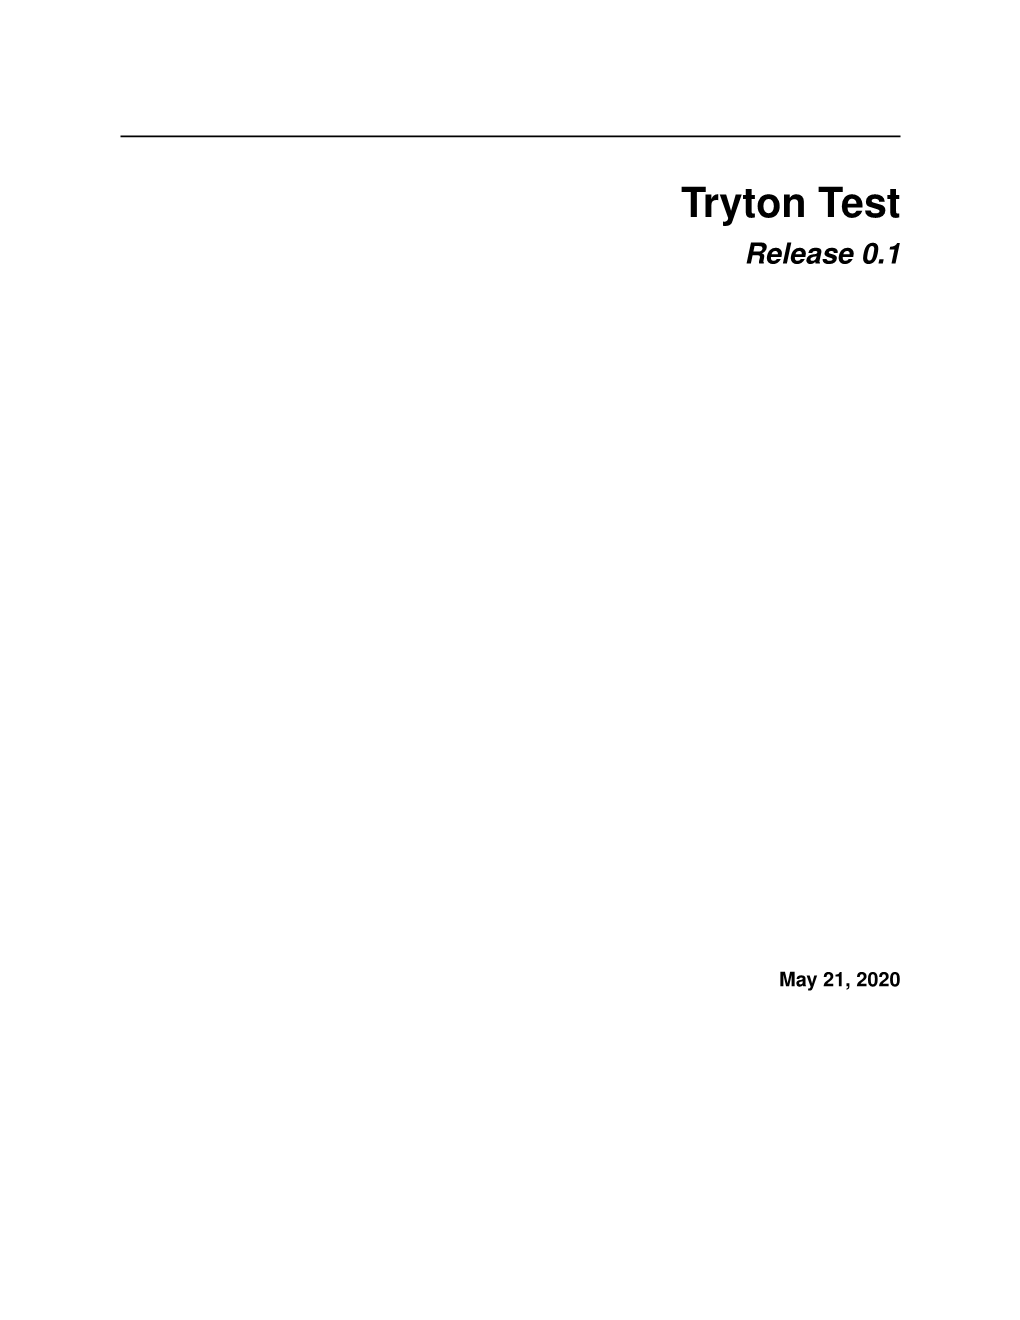 Tryton Test Release 0.1